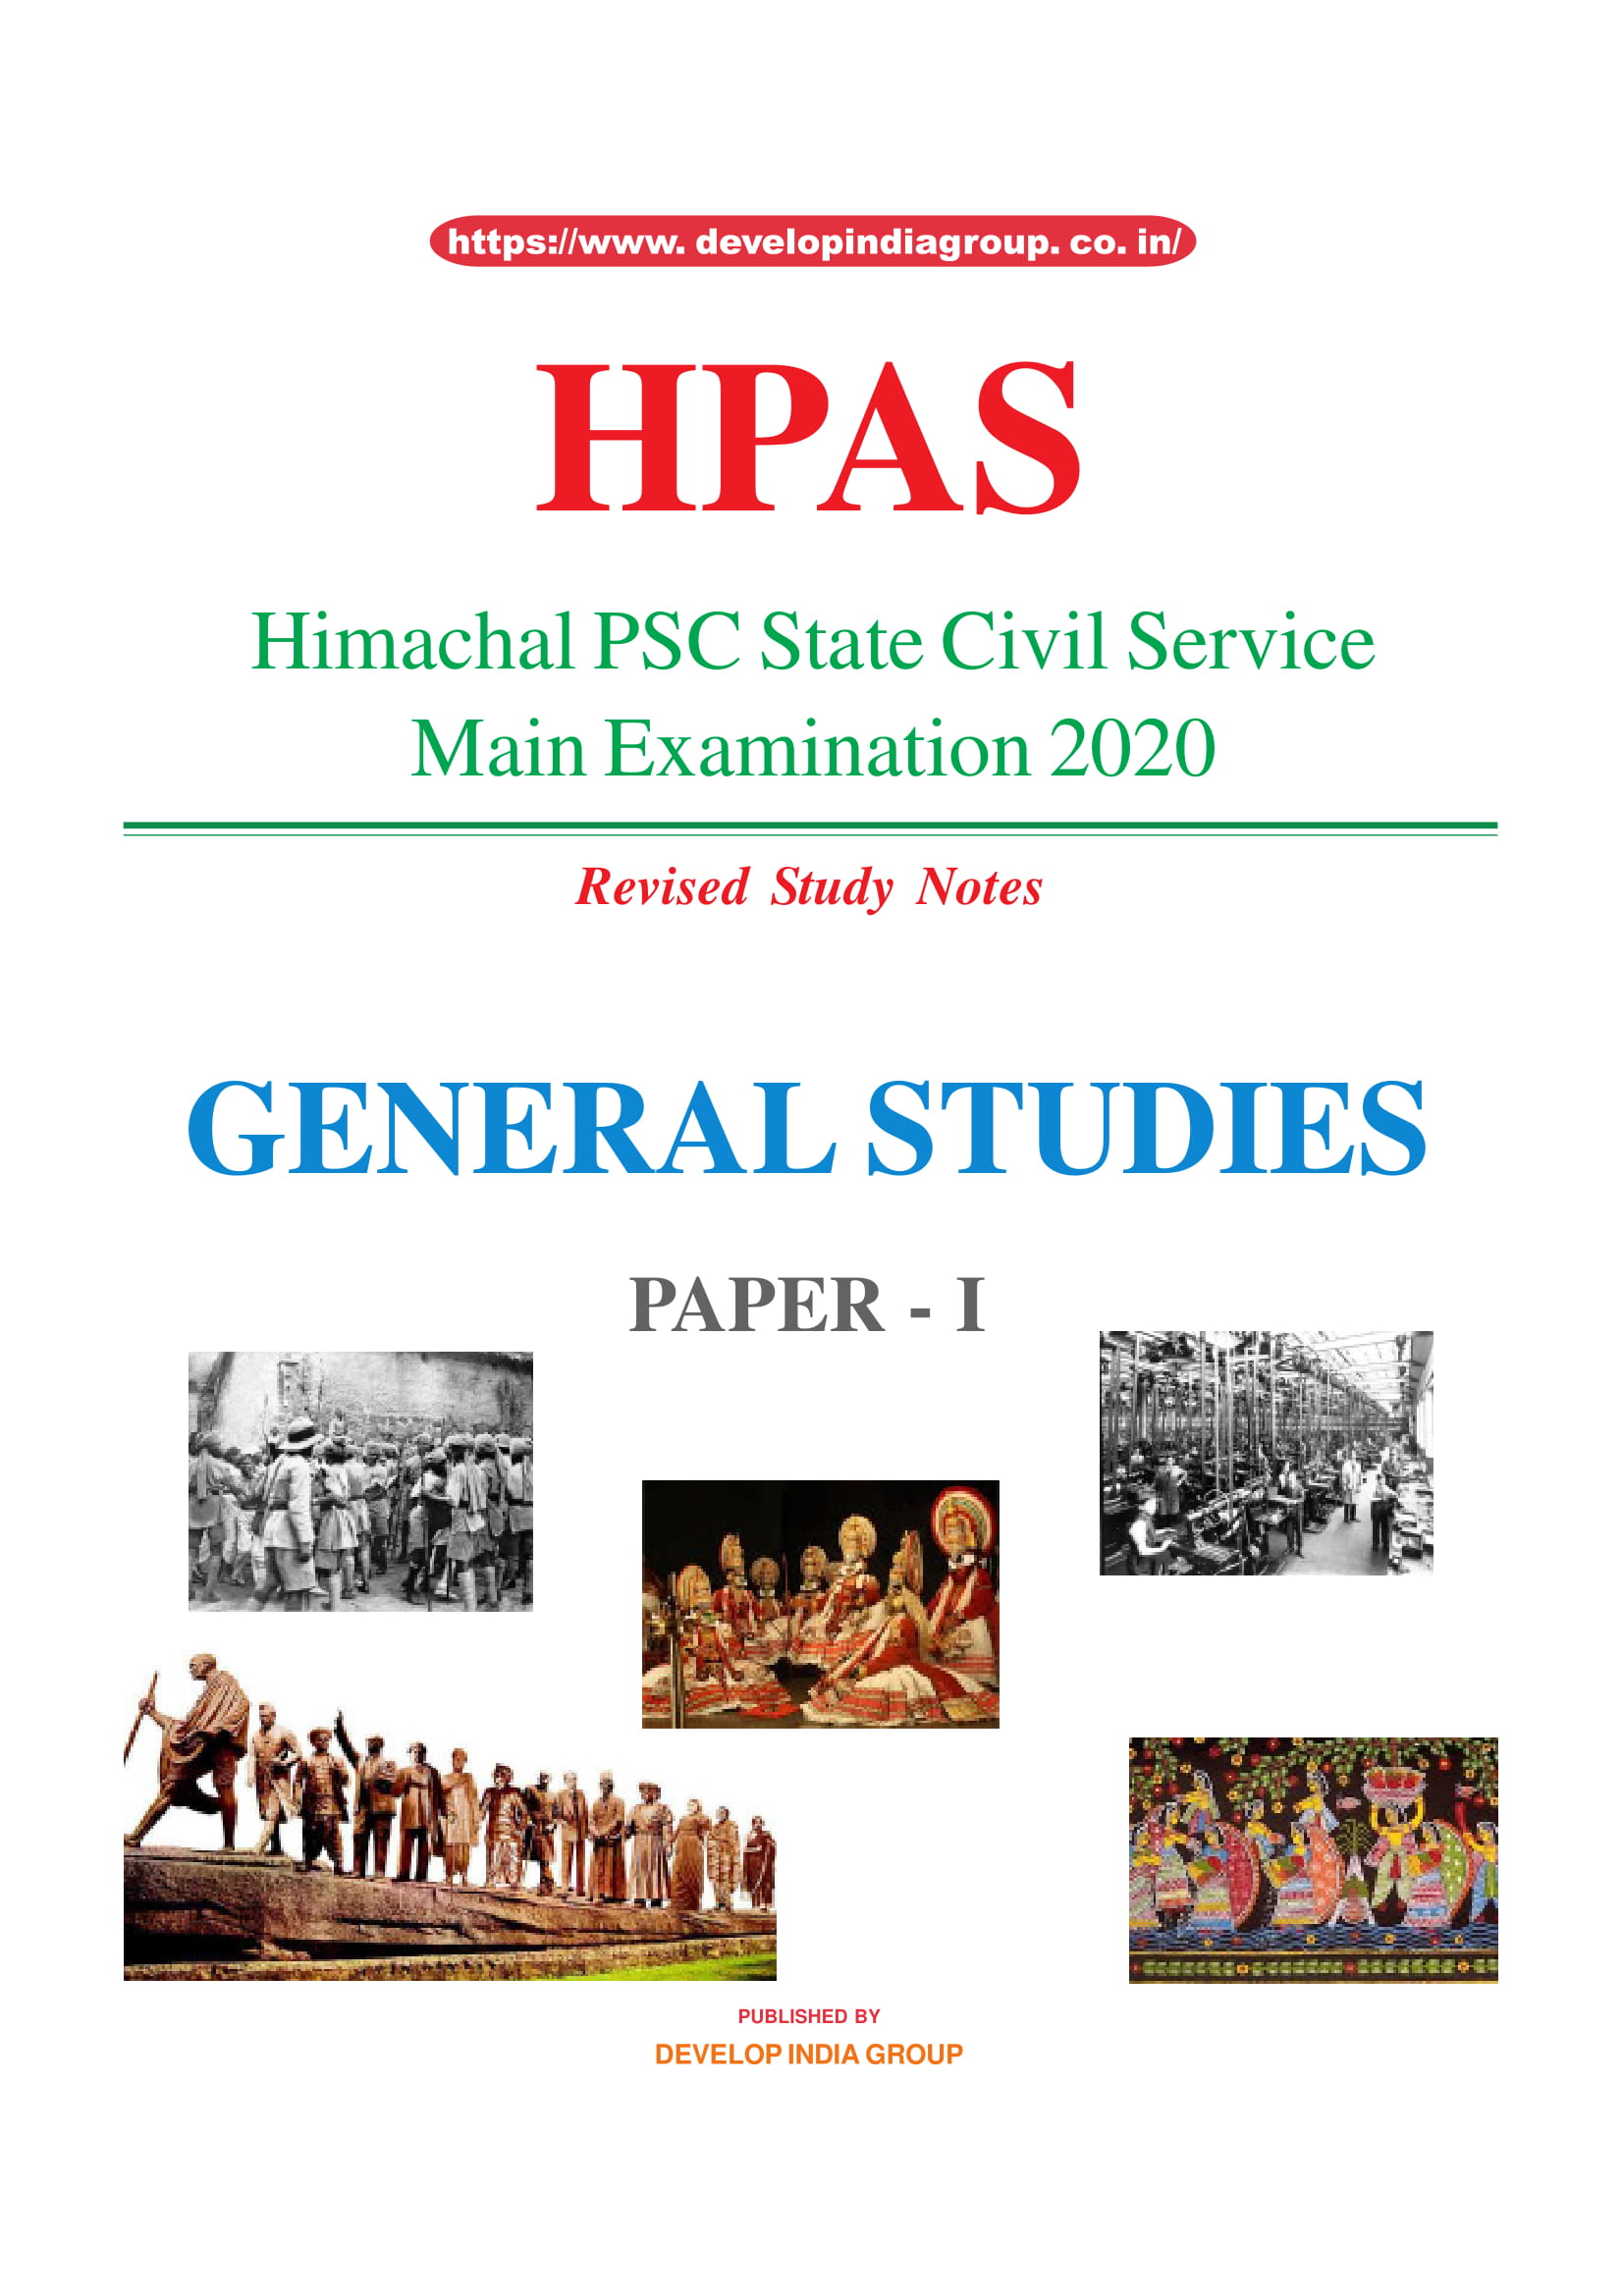 HPAS Main General Studies Paper 1